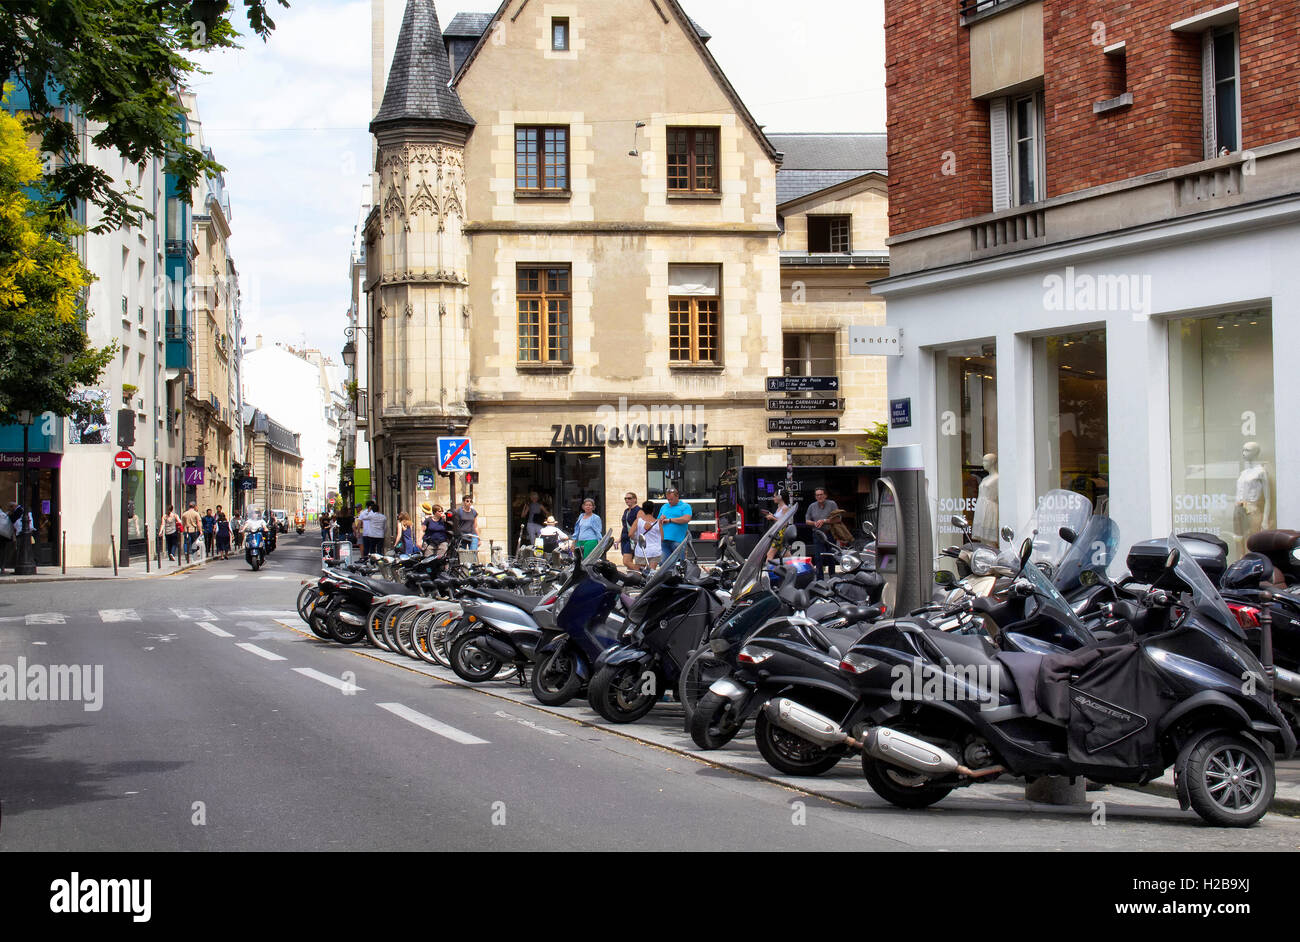 Vista de motocicletas estacionado en una de las calles en el barrio de Le Marais. Tiendas de moda y arquitectura de estilo tradicional francés Foto de stock